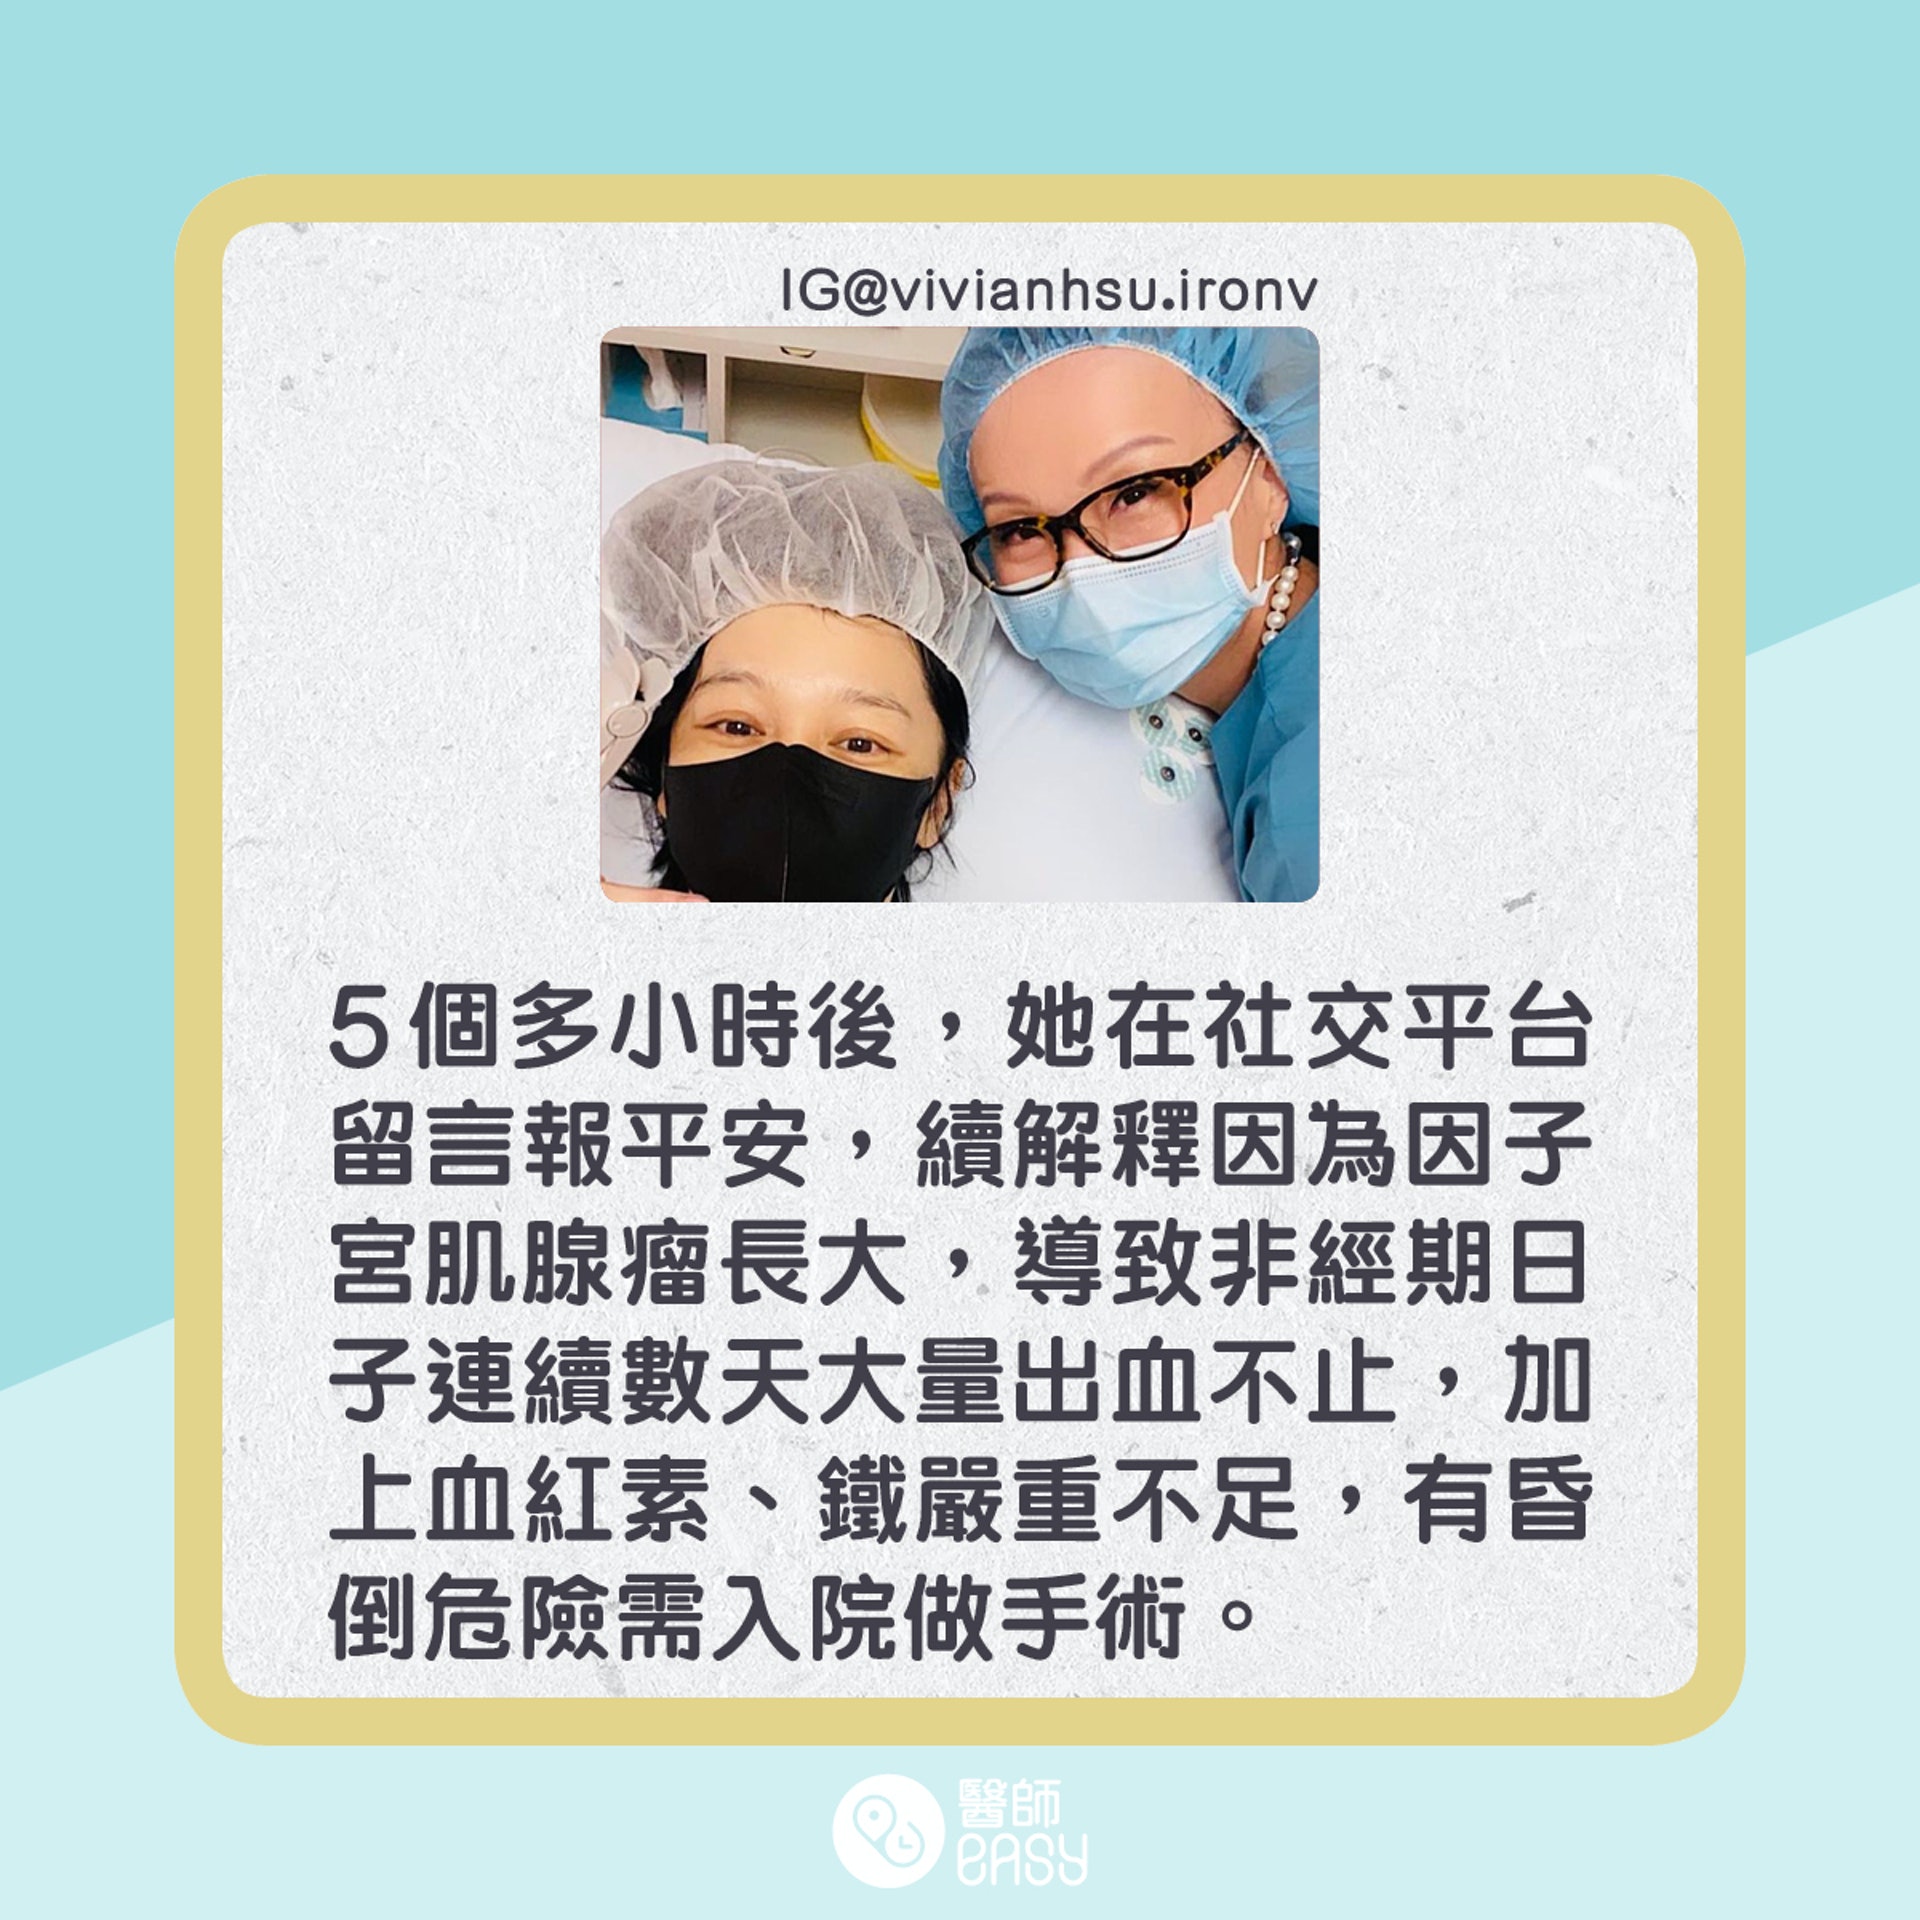 徐若瑄患子宮肌腺瘤緊急入院做手術。(01製圖)